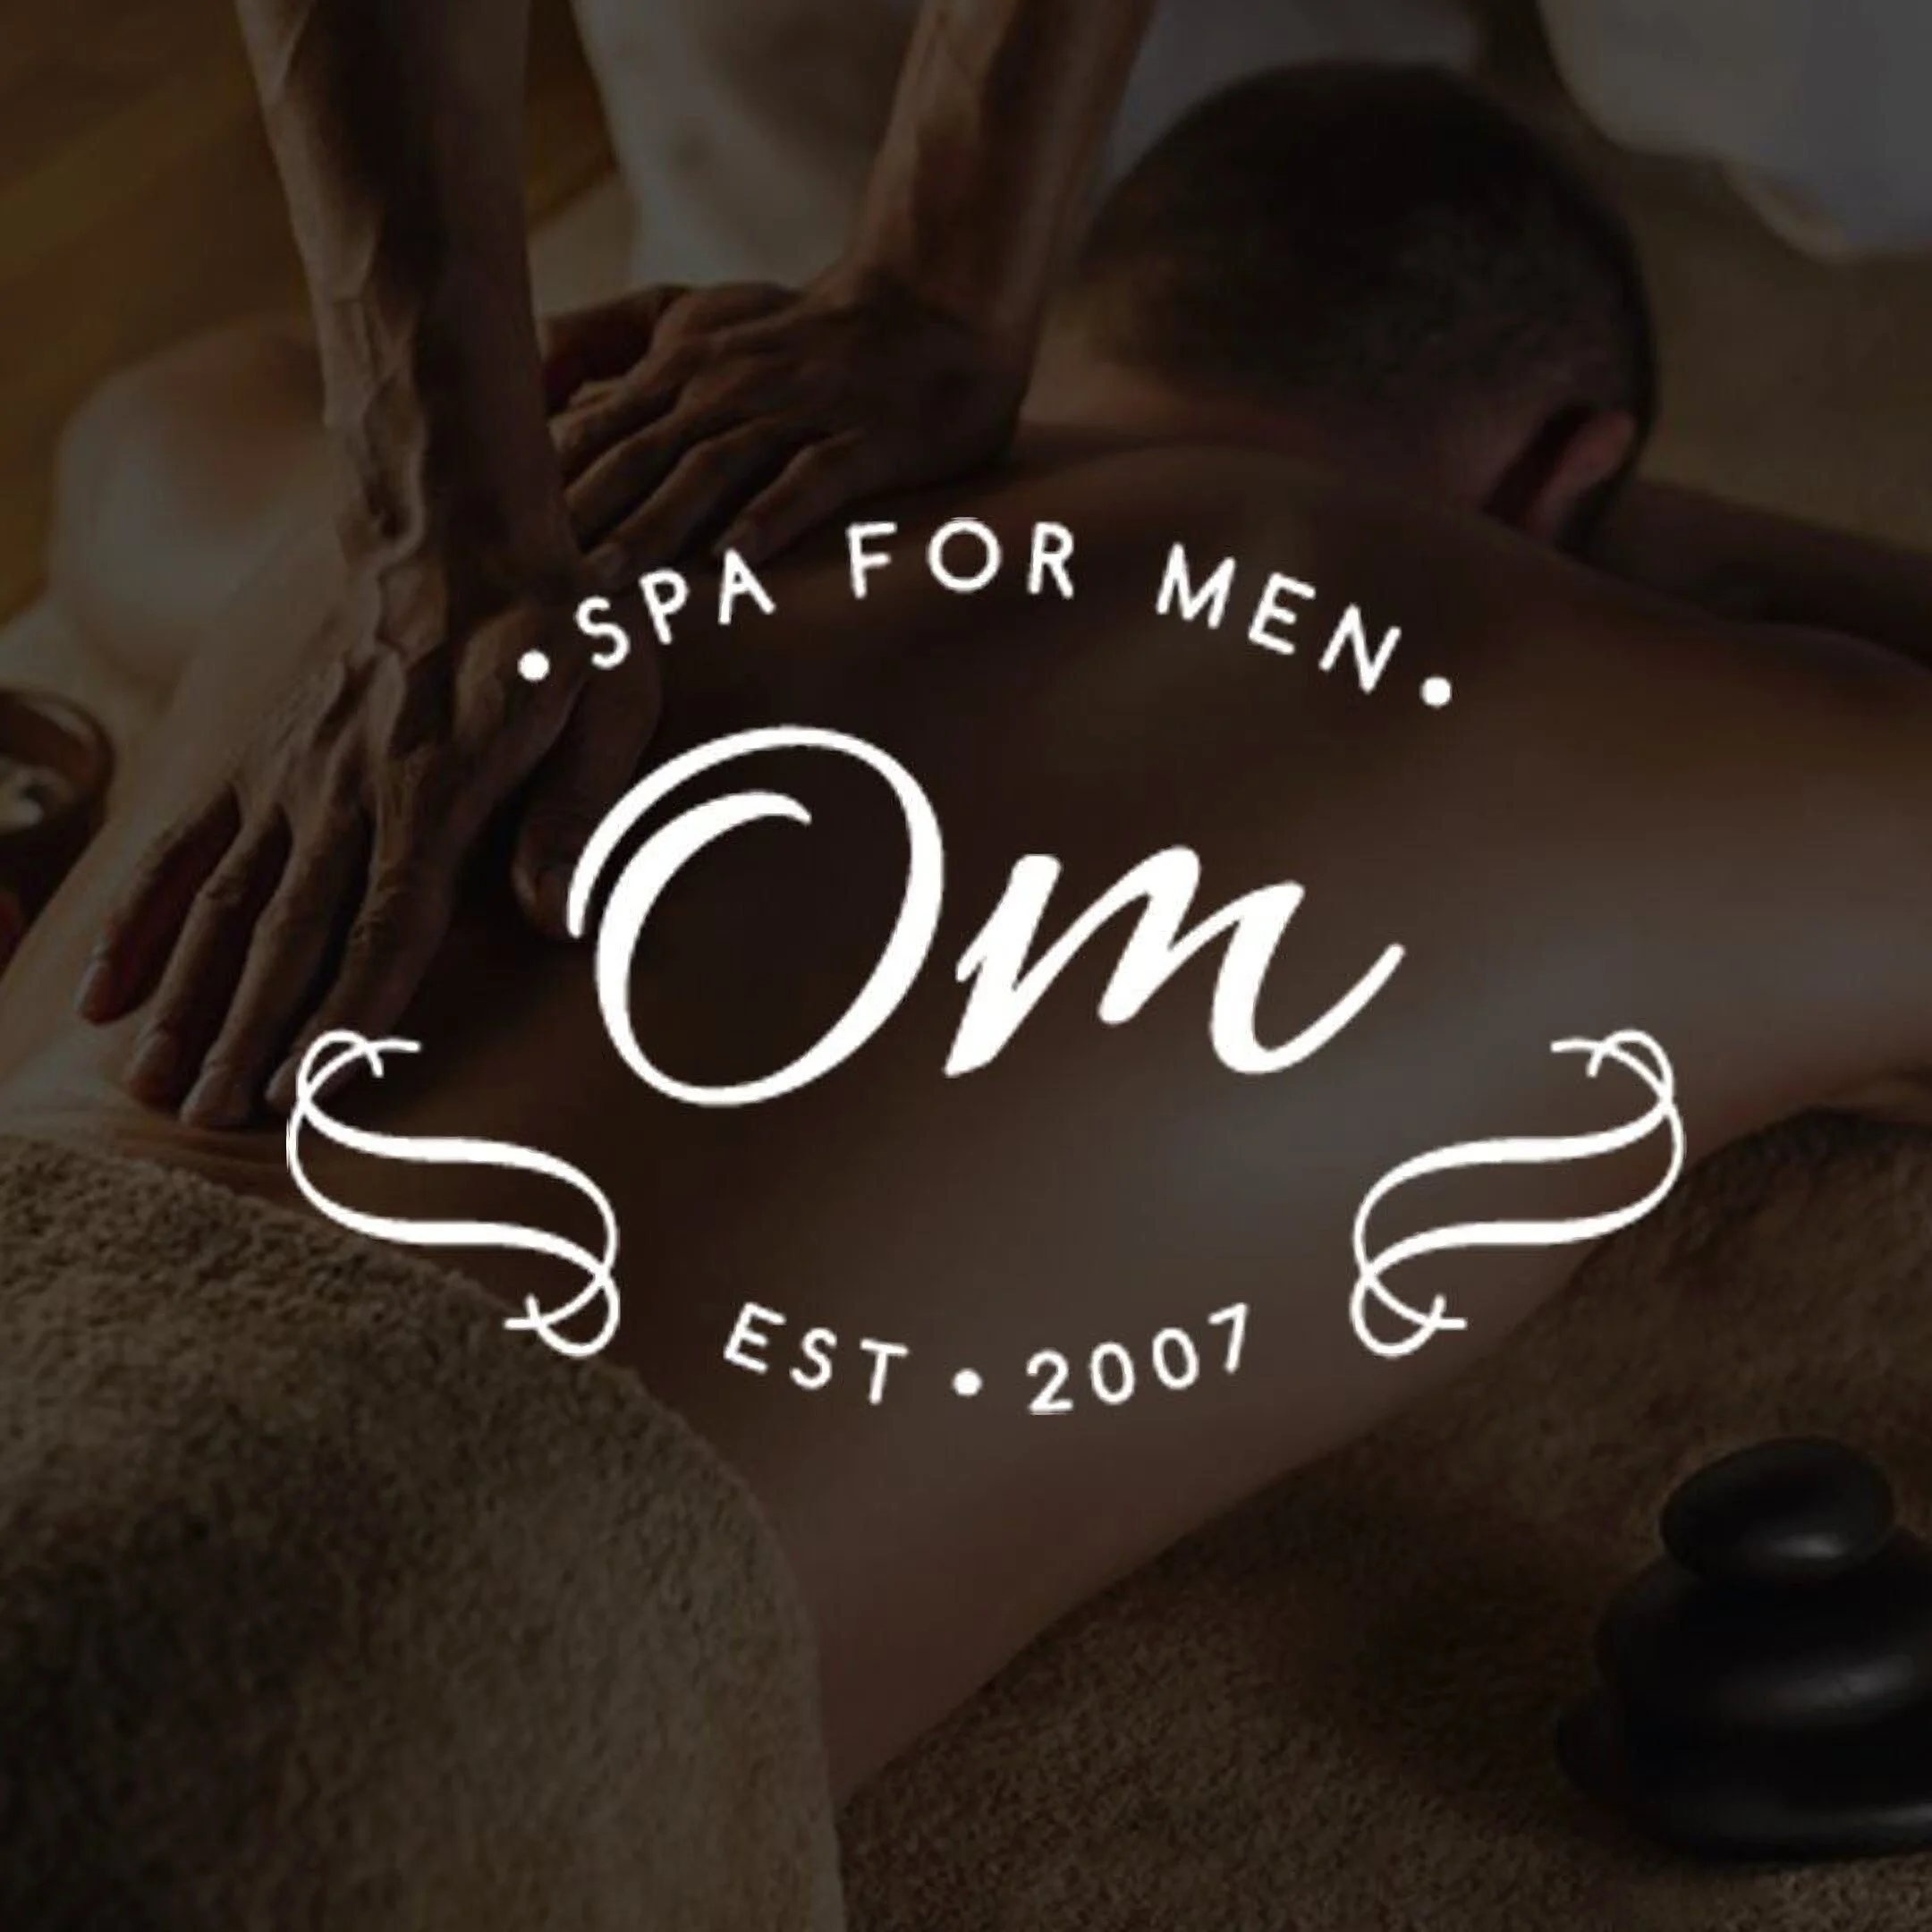 Spa-om-spa-for-men-5611